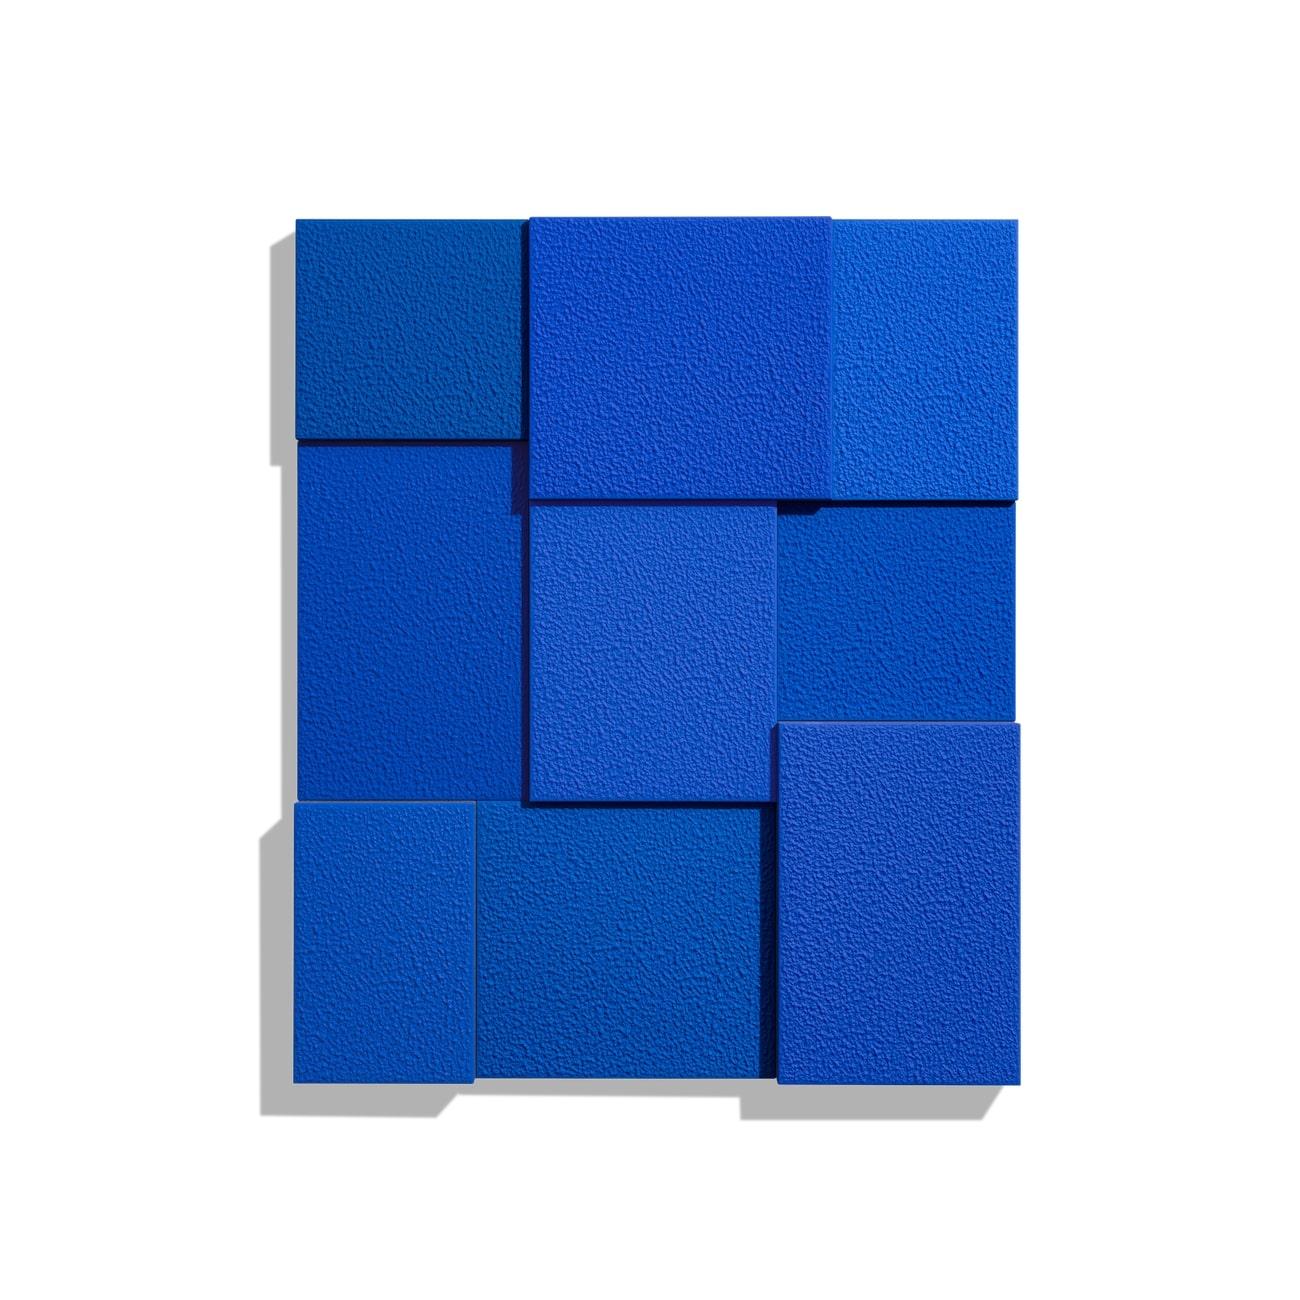 Bleu, neuf fois - Print de Peter Halley